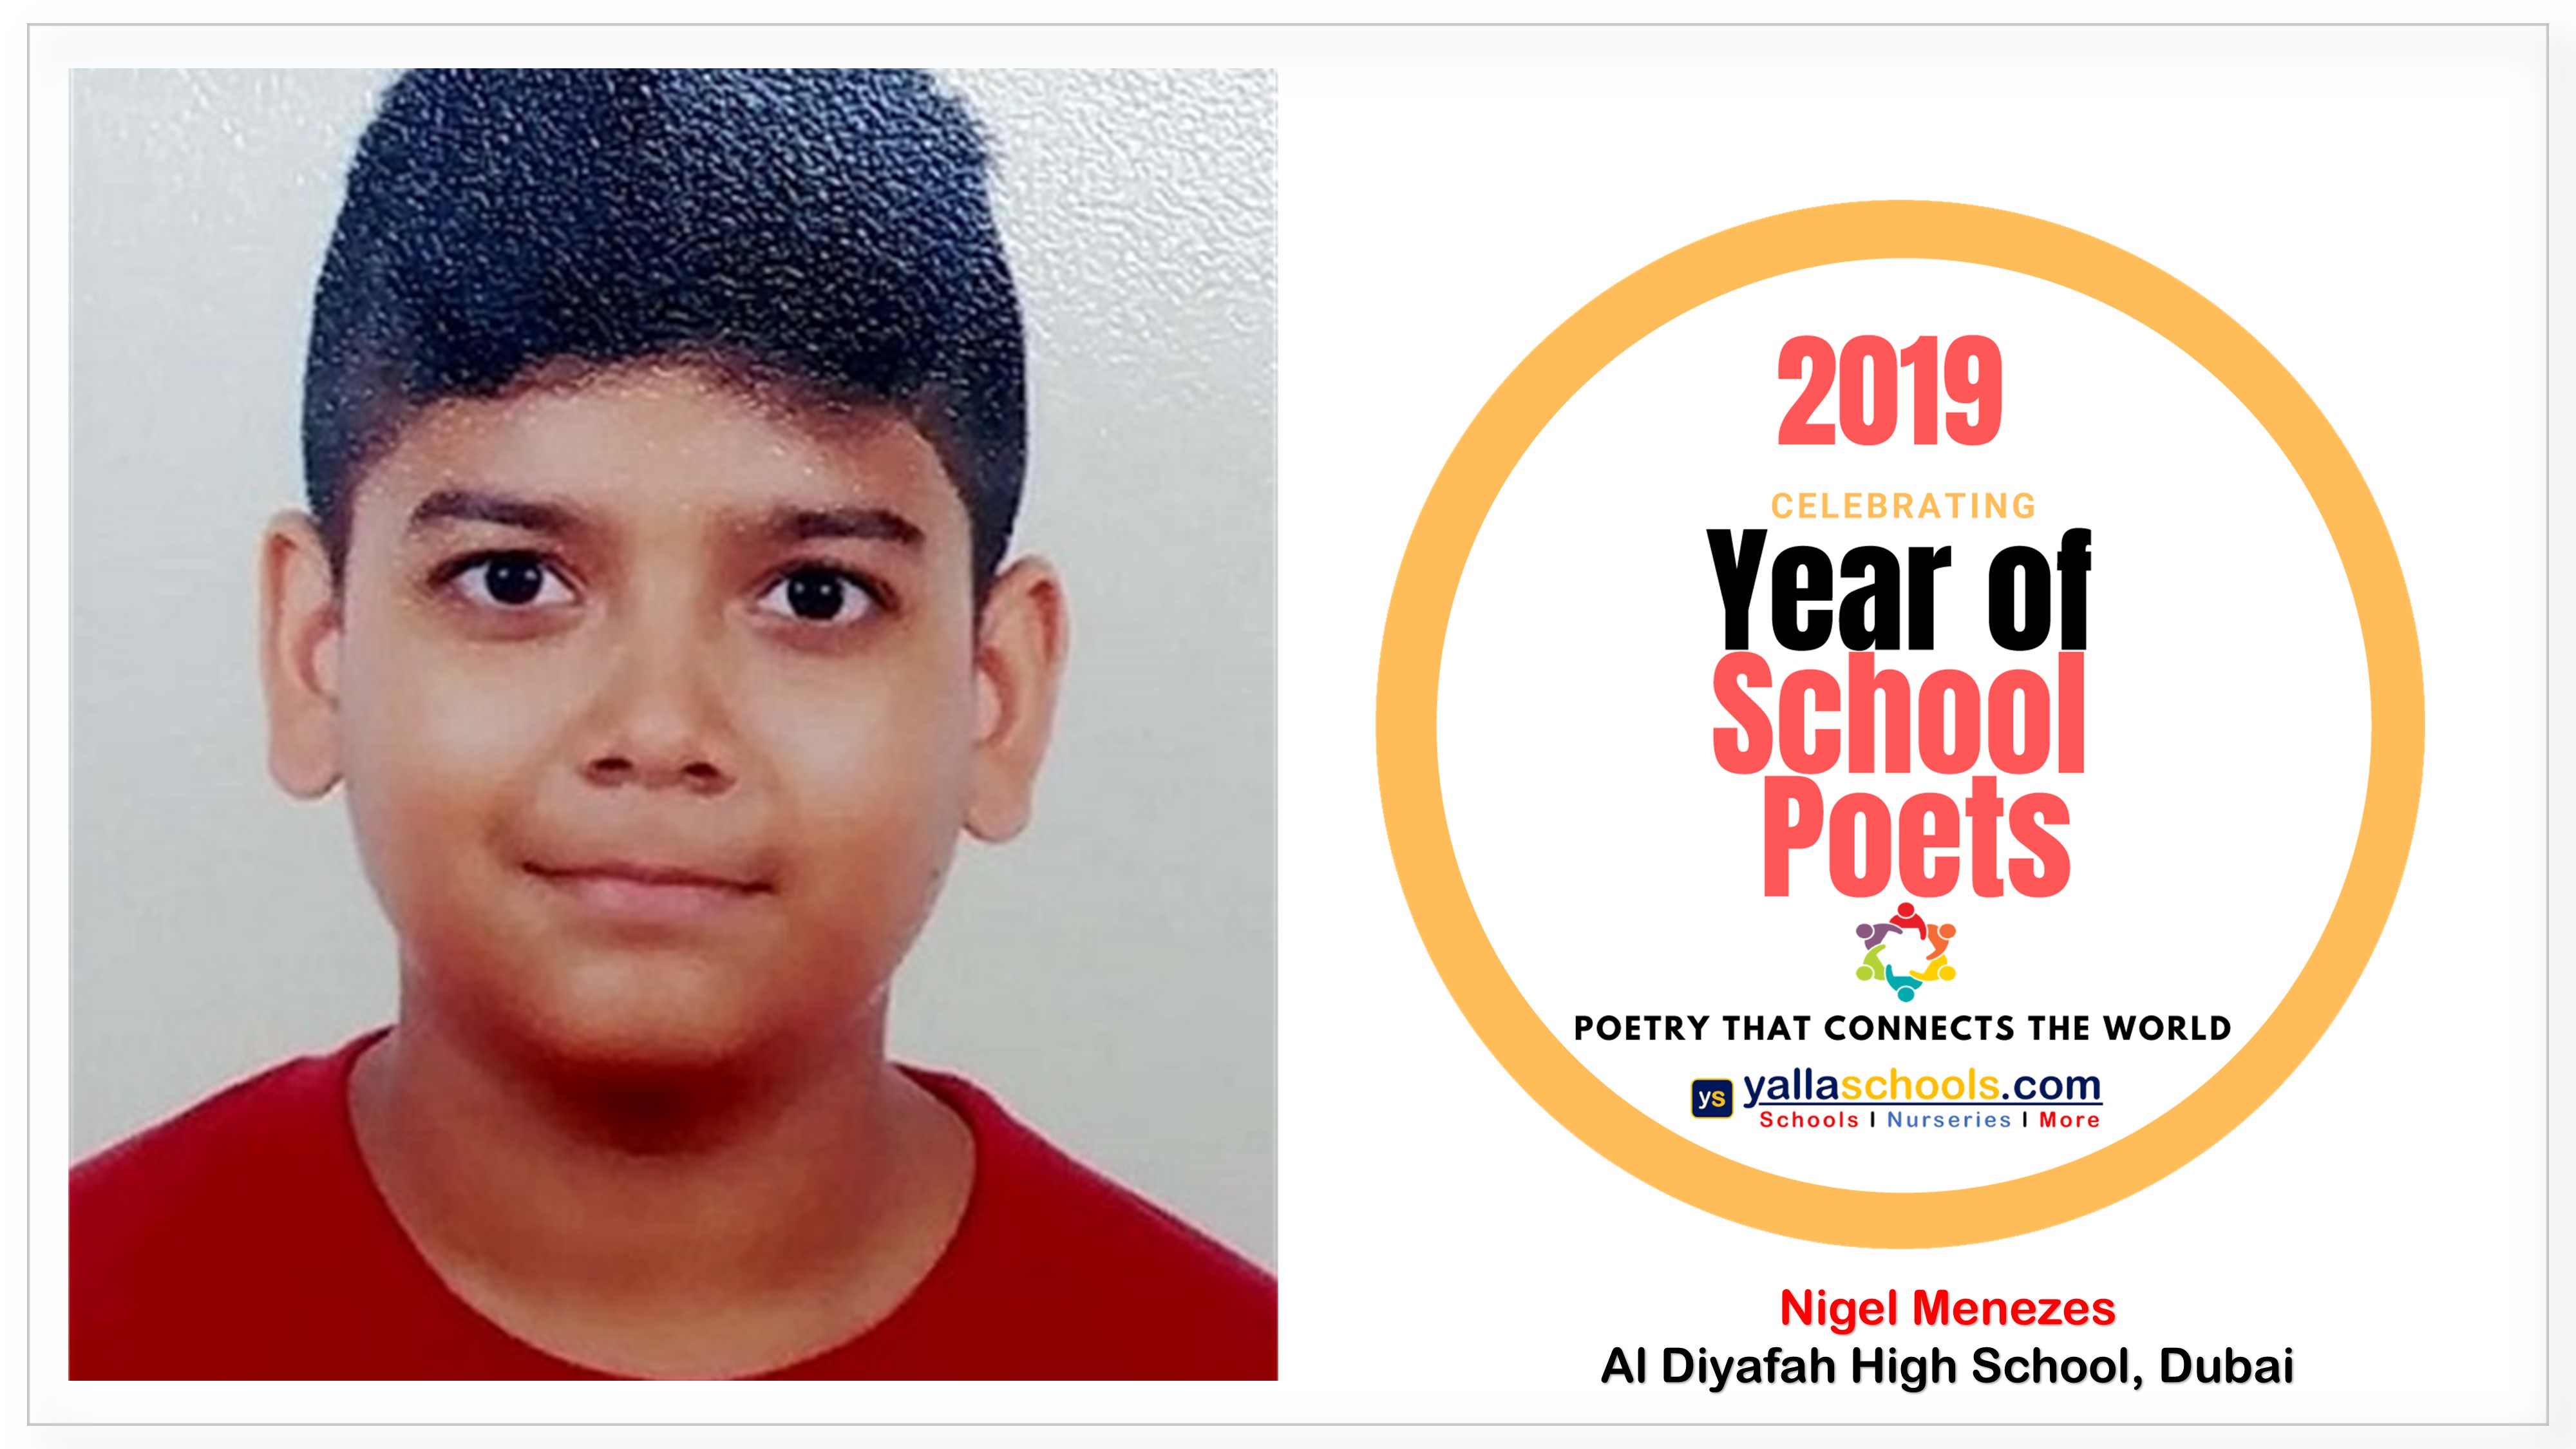 2019_Year_of_School_Poets,_Nigel_Menezes,Al_Diyafah_High_School,Dubai